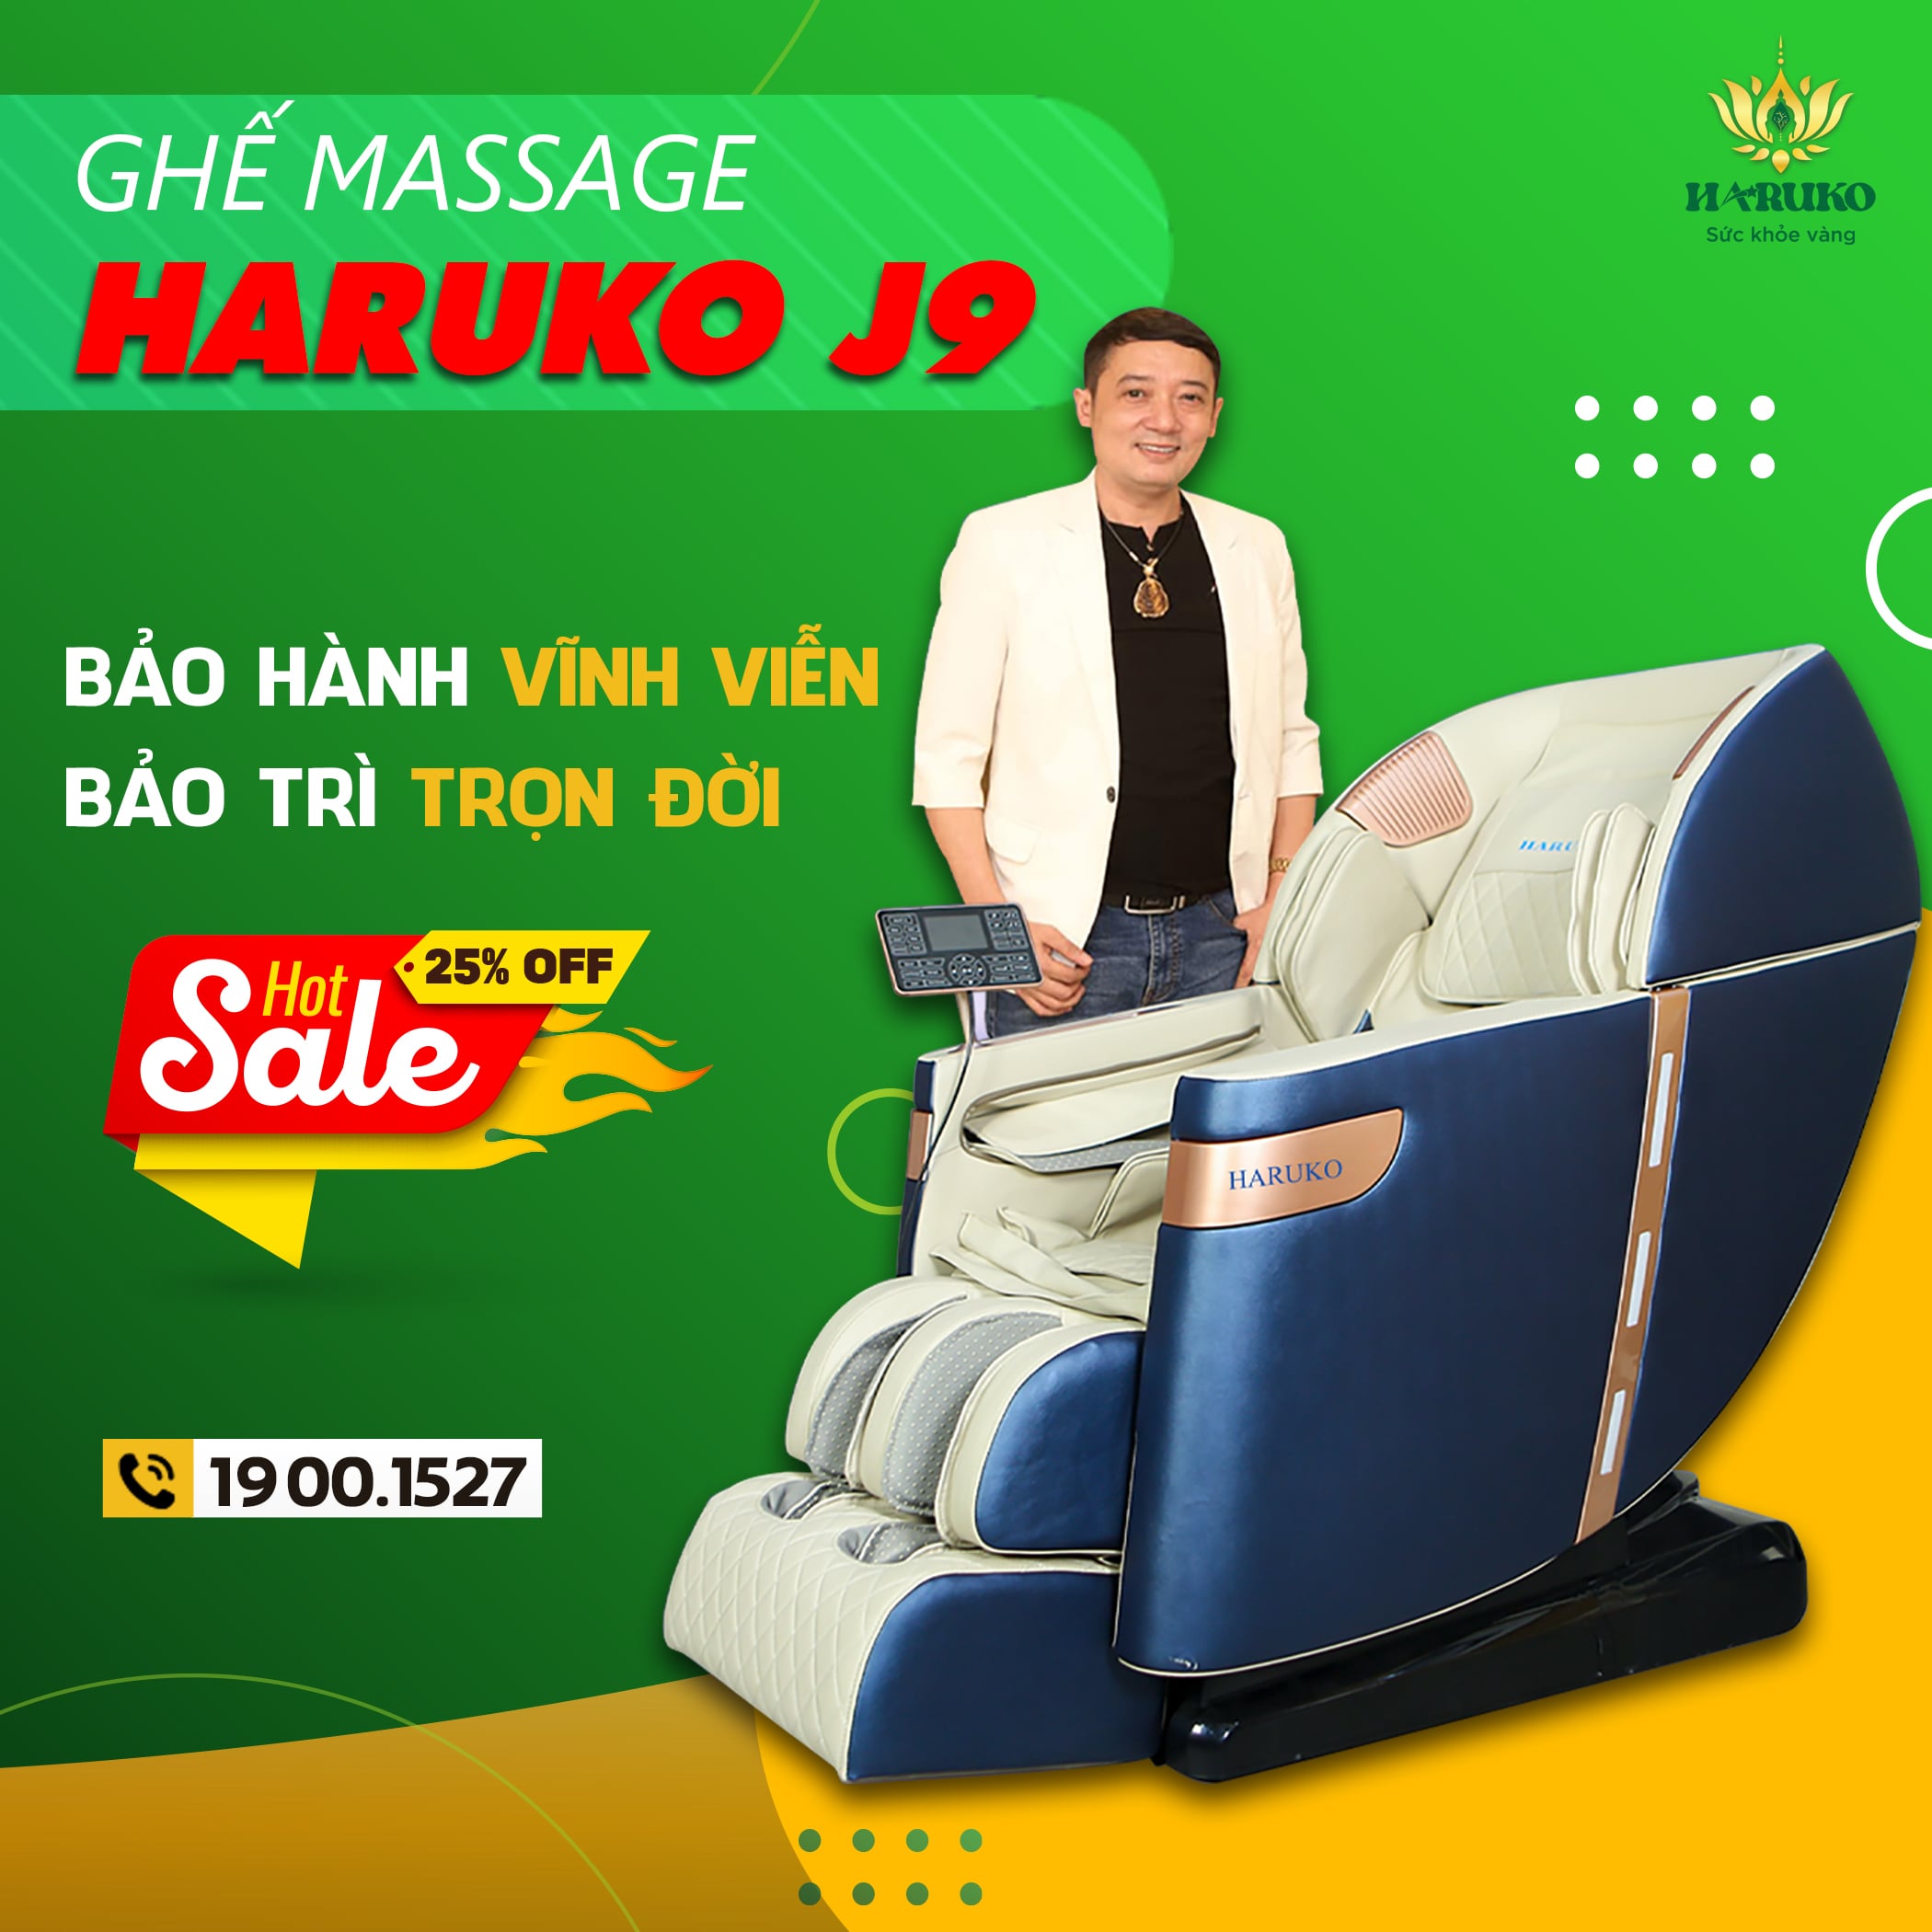 Ghế massage Haruko J9 sở hữu dịch vụ bảo hành vĩnh viễn uy tín nhất trên thị trường